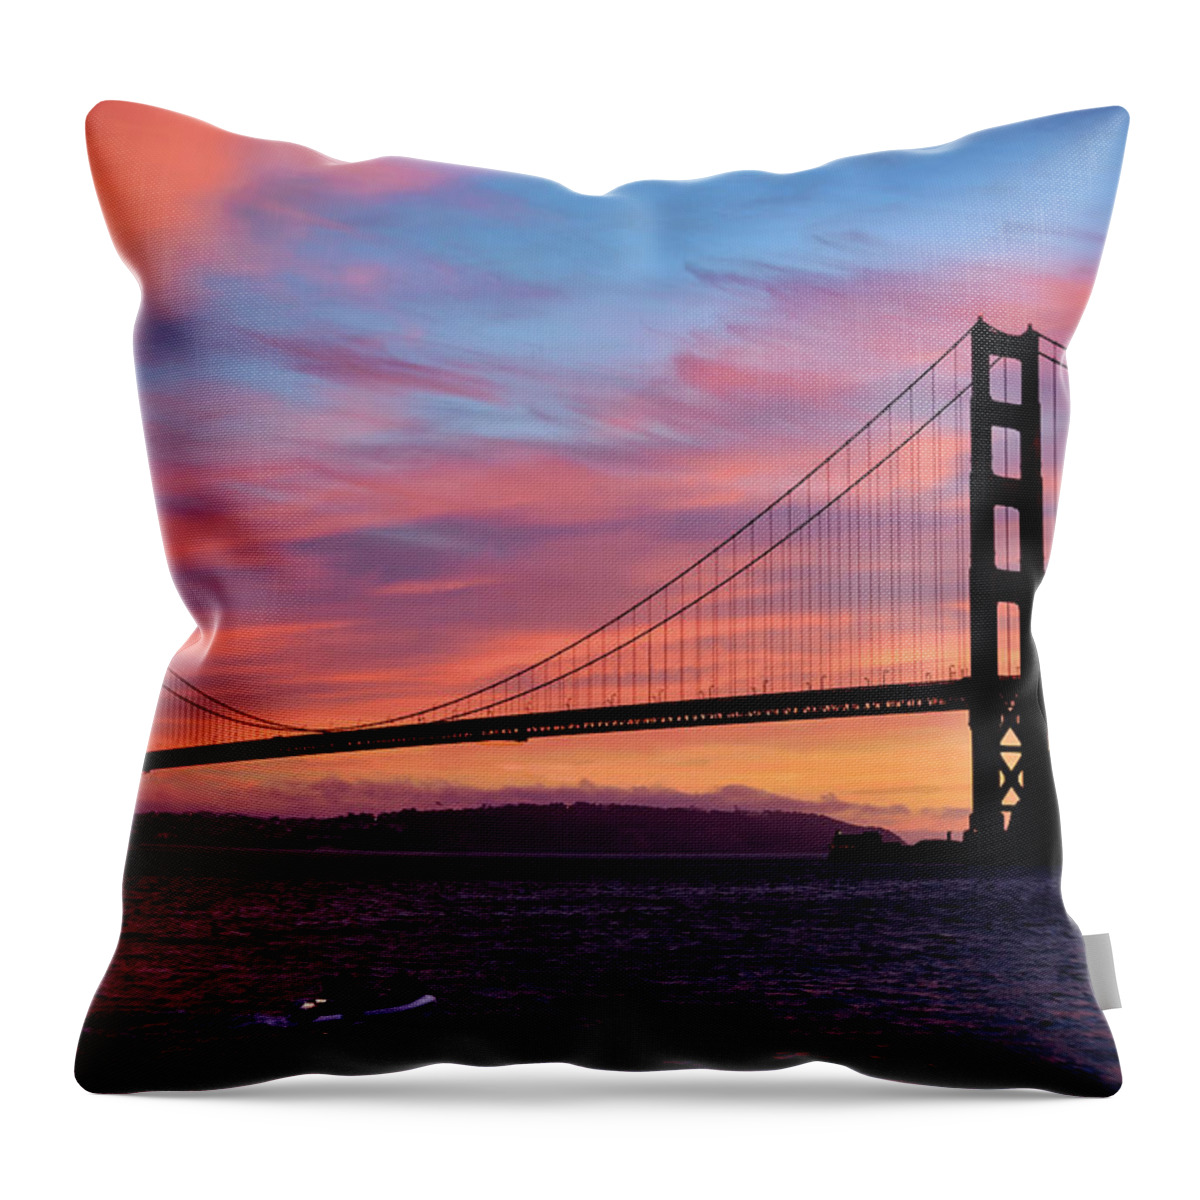 Golden Gate Bridge Throw Pillow featuring the photograph Golden Gate Sunset by Brian Tada